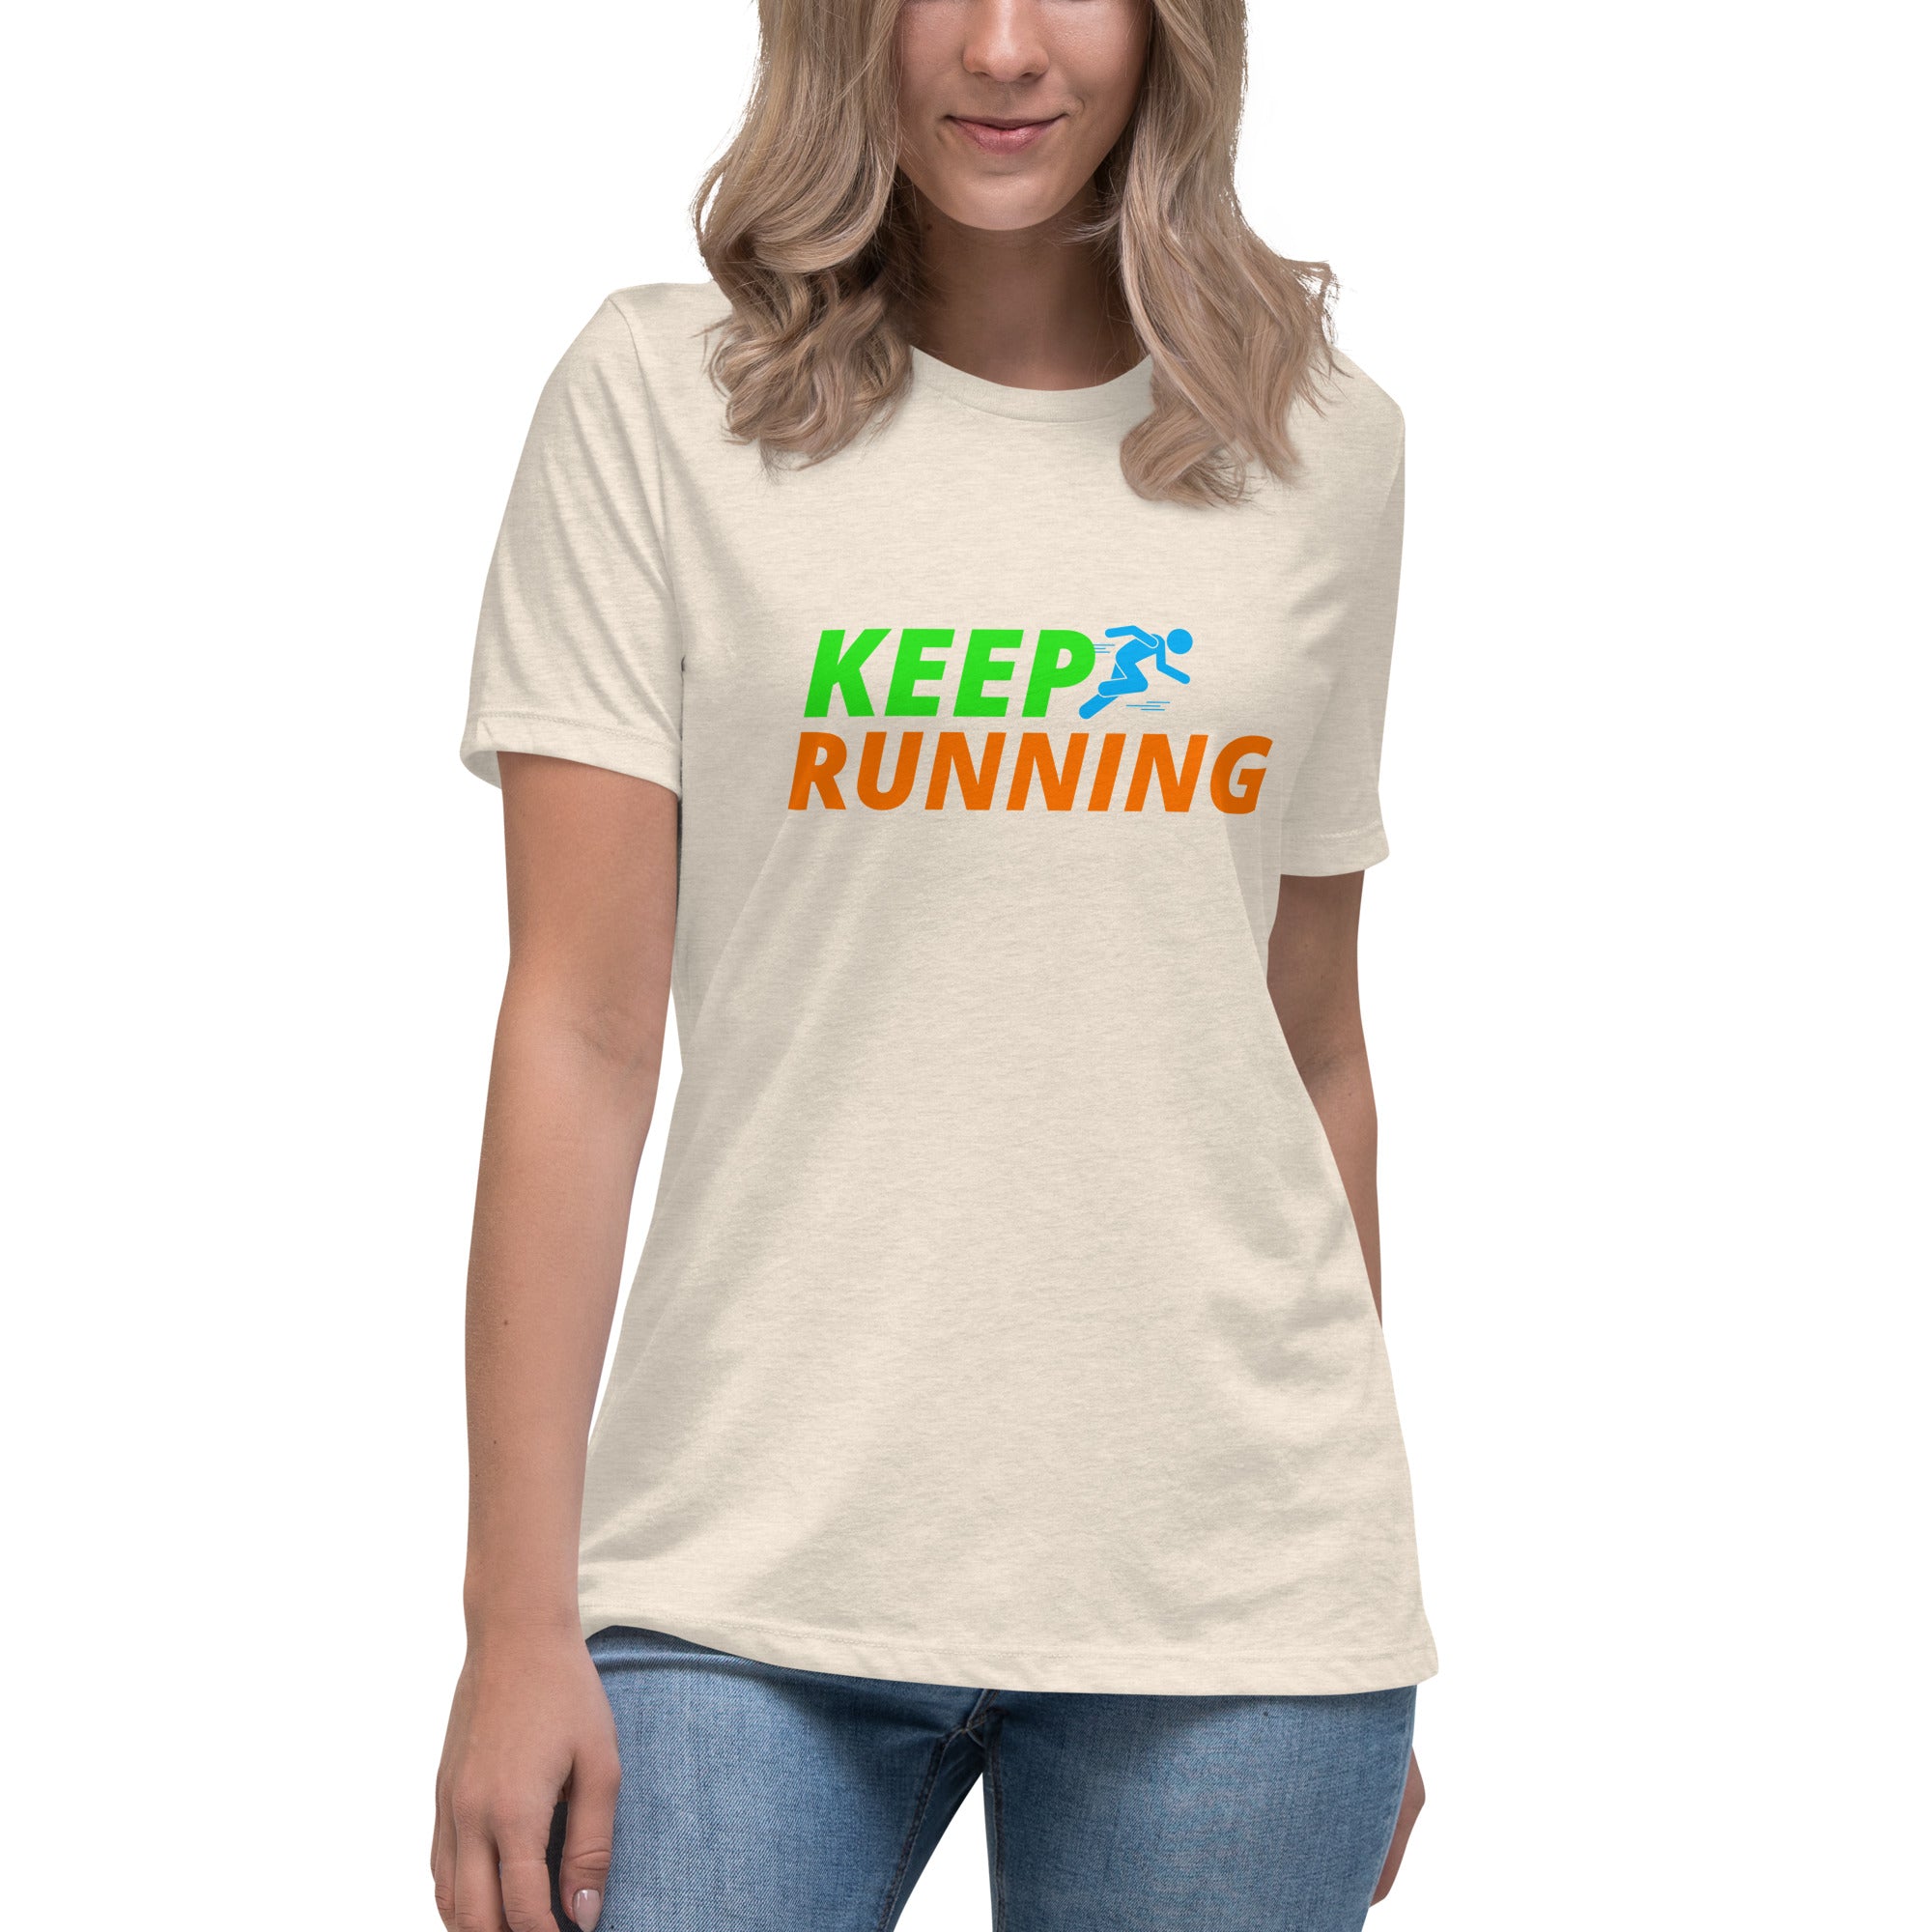 Keep Running Women's Premium T-Shirt